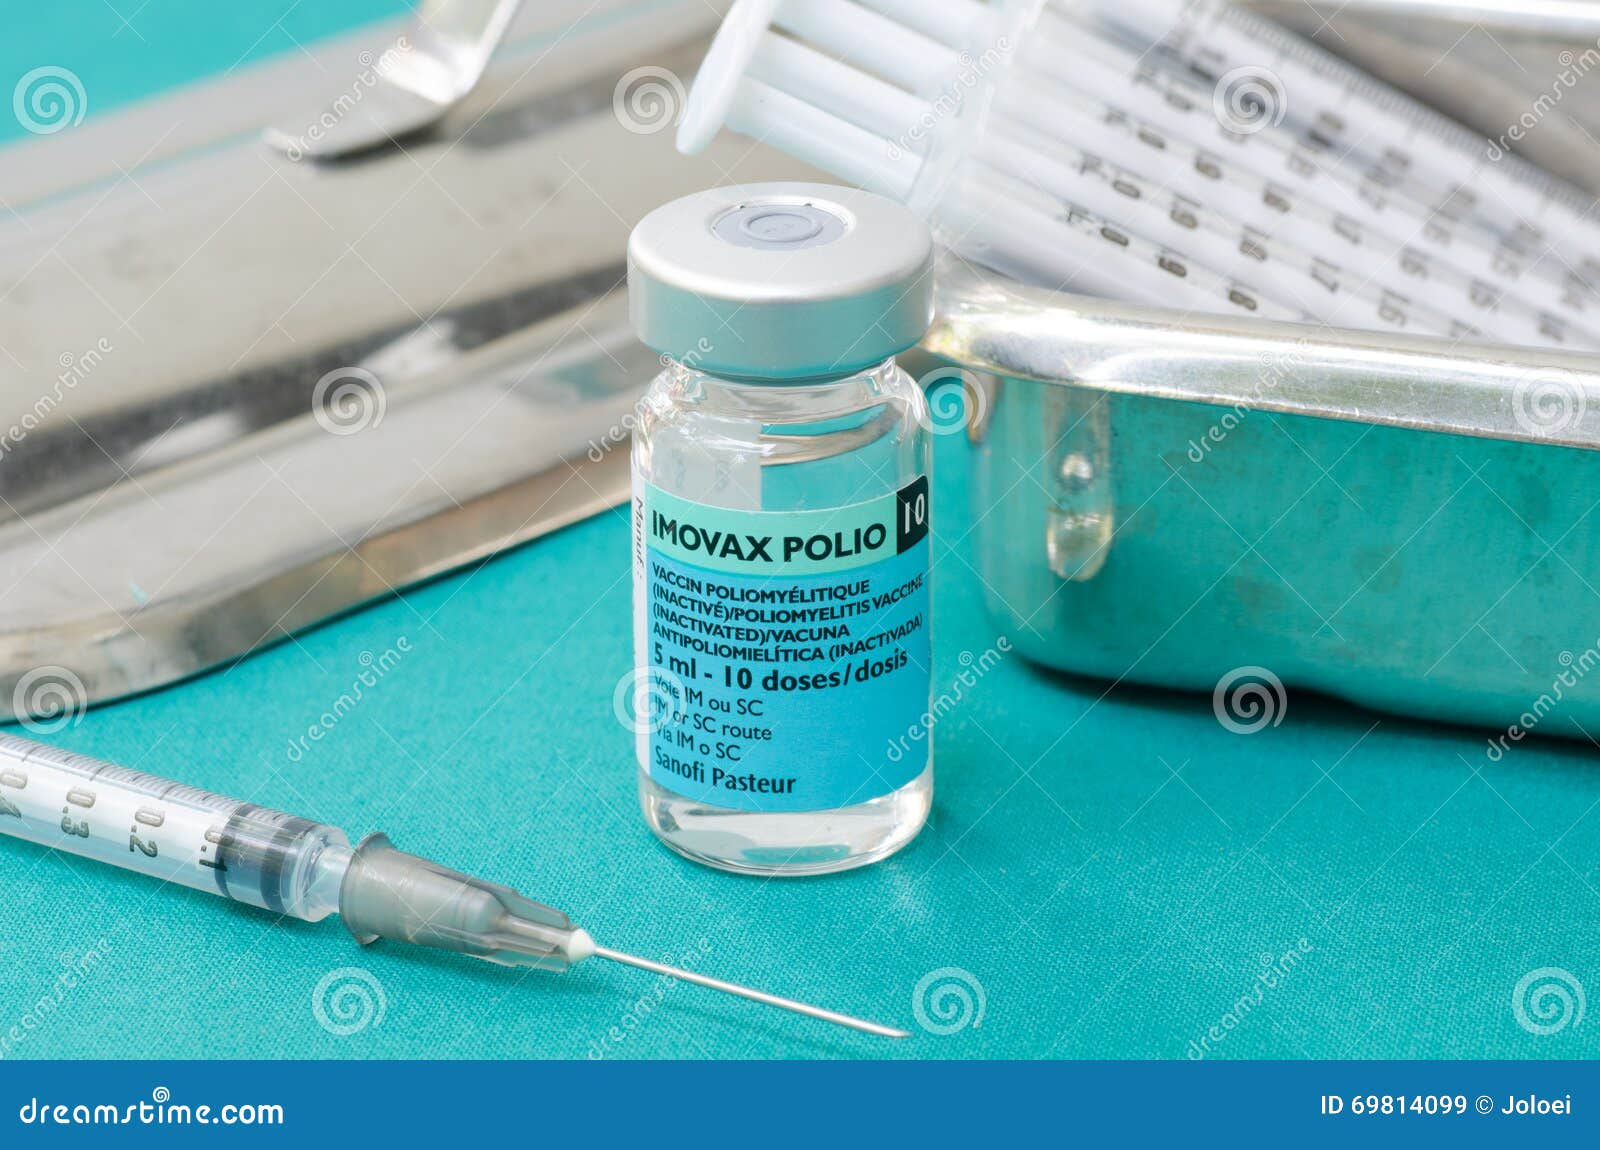 Инактивированная полиомиелитная вакцина. Полиомиелит инактивированная вакцина. Имовакс полио вакцина. Имовакс полио инактивированная. ИПВ вакцина полиомиелит.